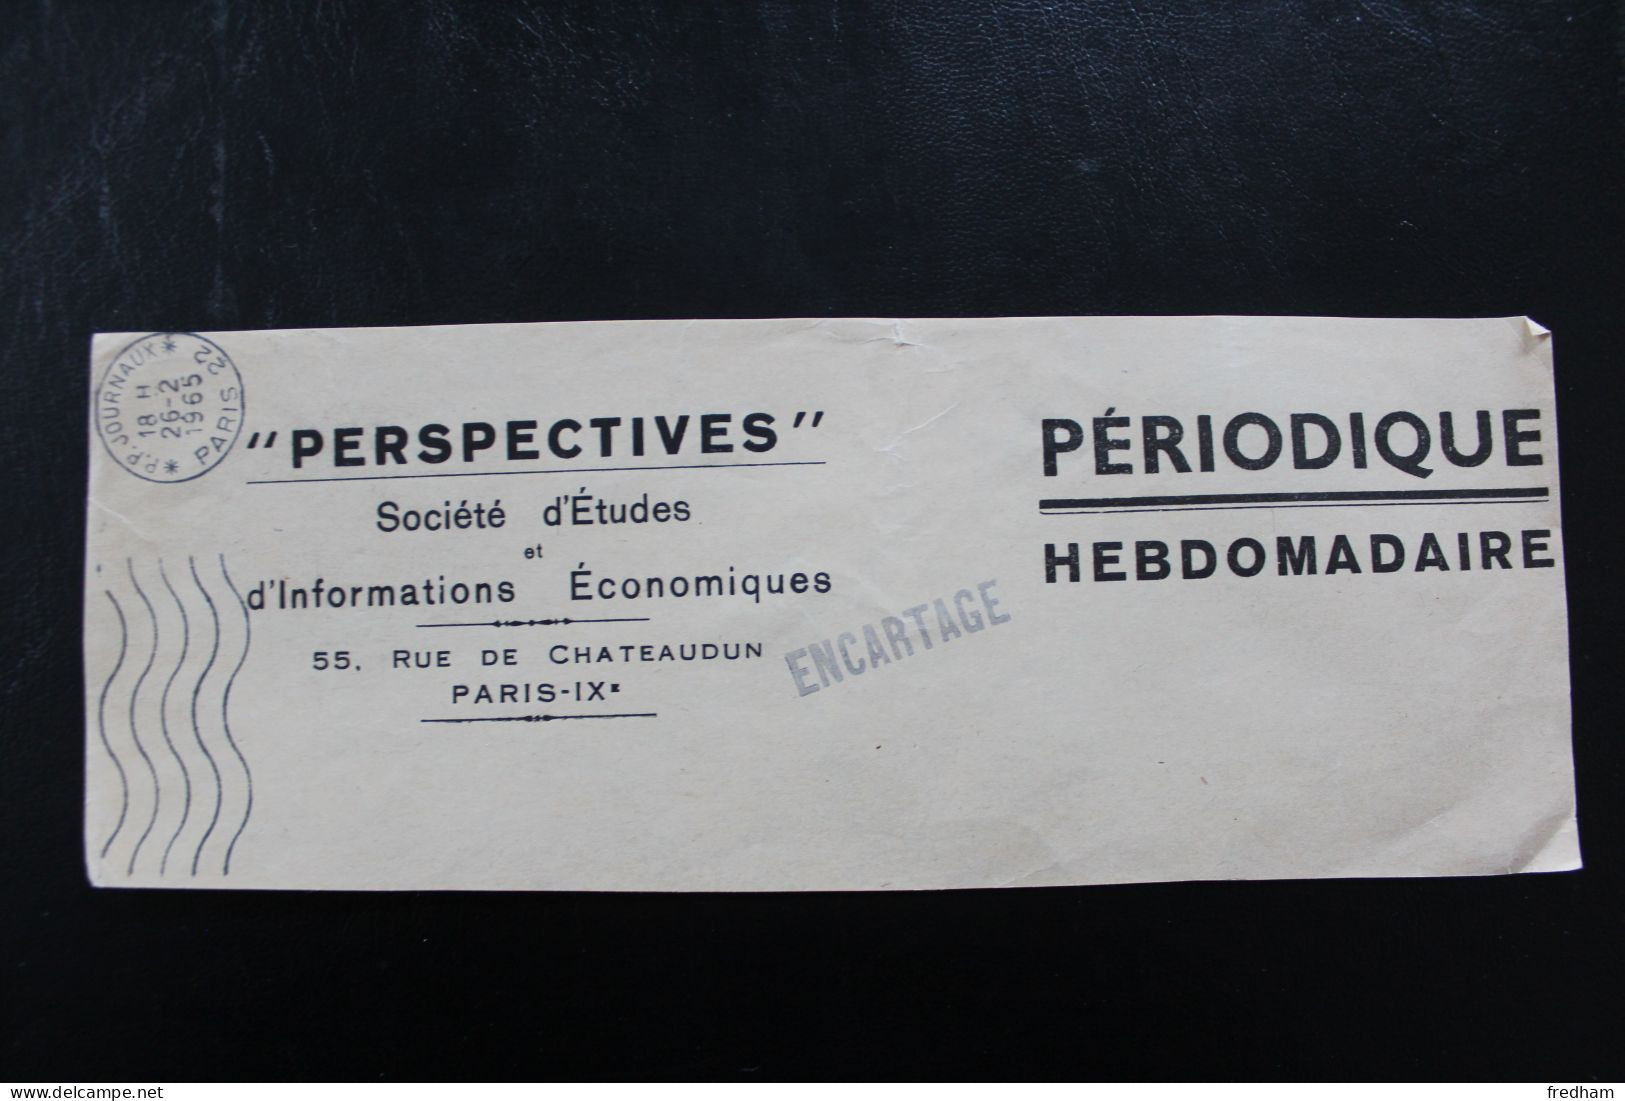 OMEC P.P. JOURNAUX PARIS 22 DU 26-2-1965 SUR BANDE PERIODIQUE HEBDO " PERSPECTIVES " GRIFFE ENCARTAGE - Periódicos